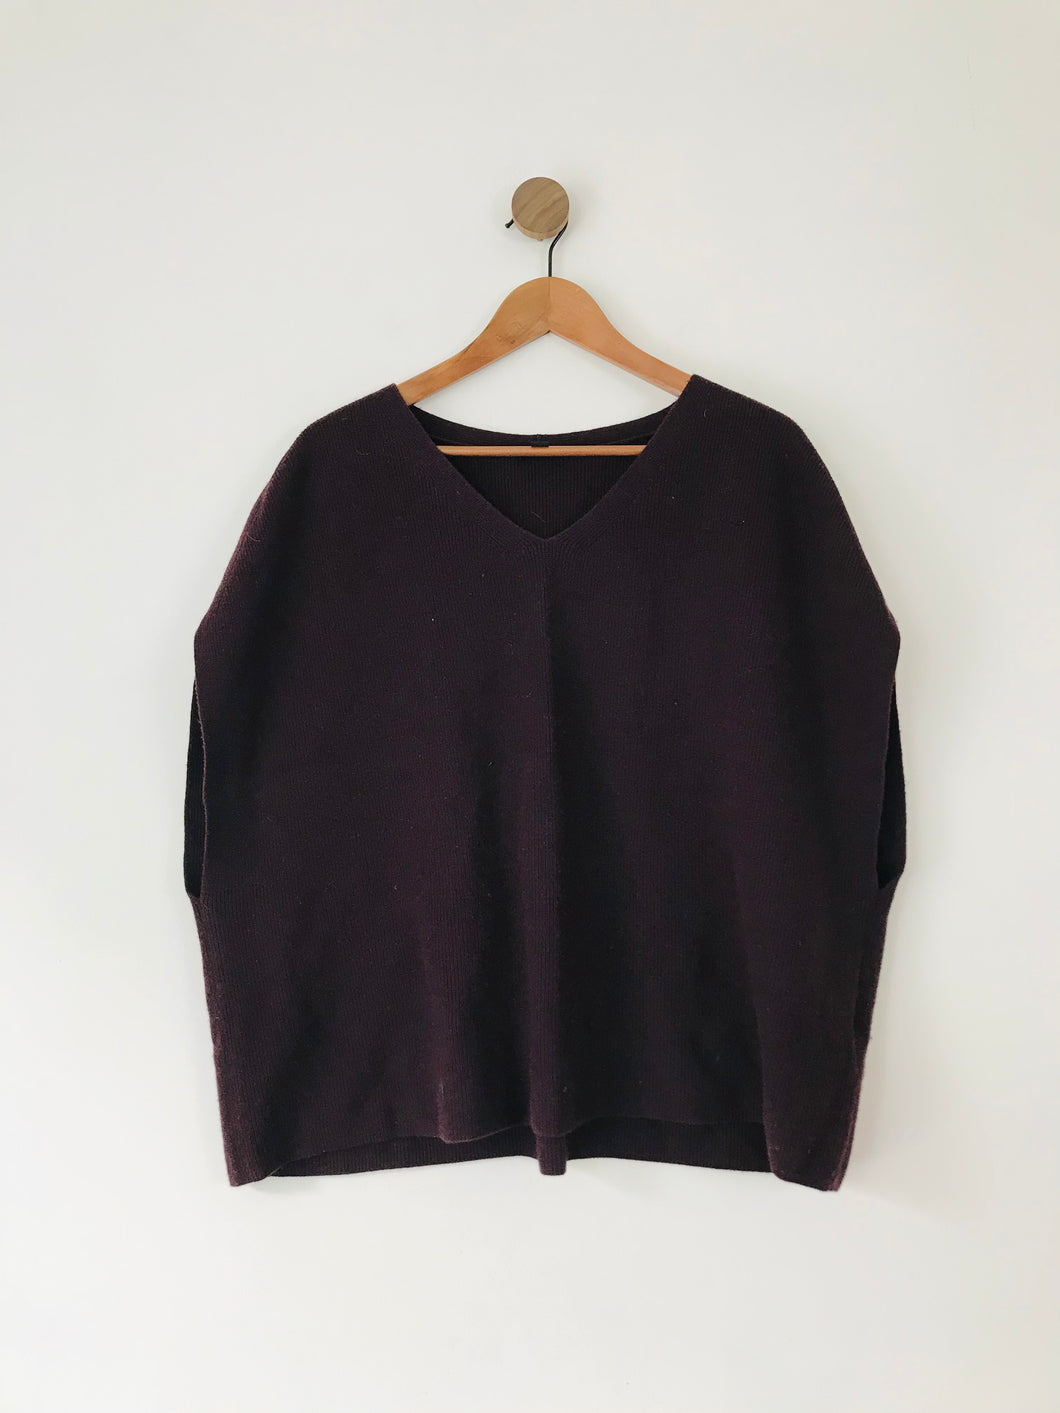 COS Women’s Oversized Wool Sweater Vest Jumper | M UK12 | Maroon